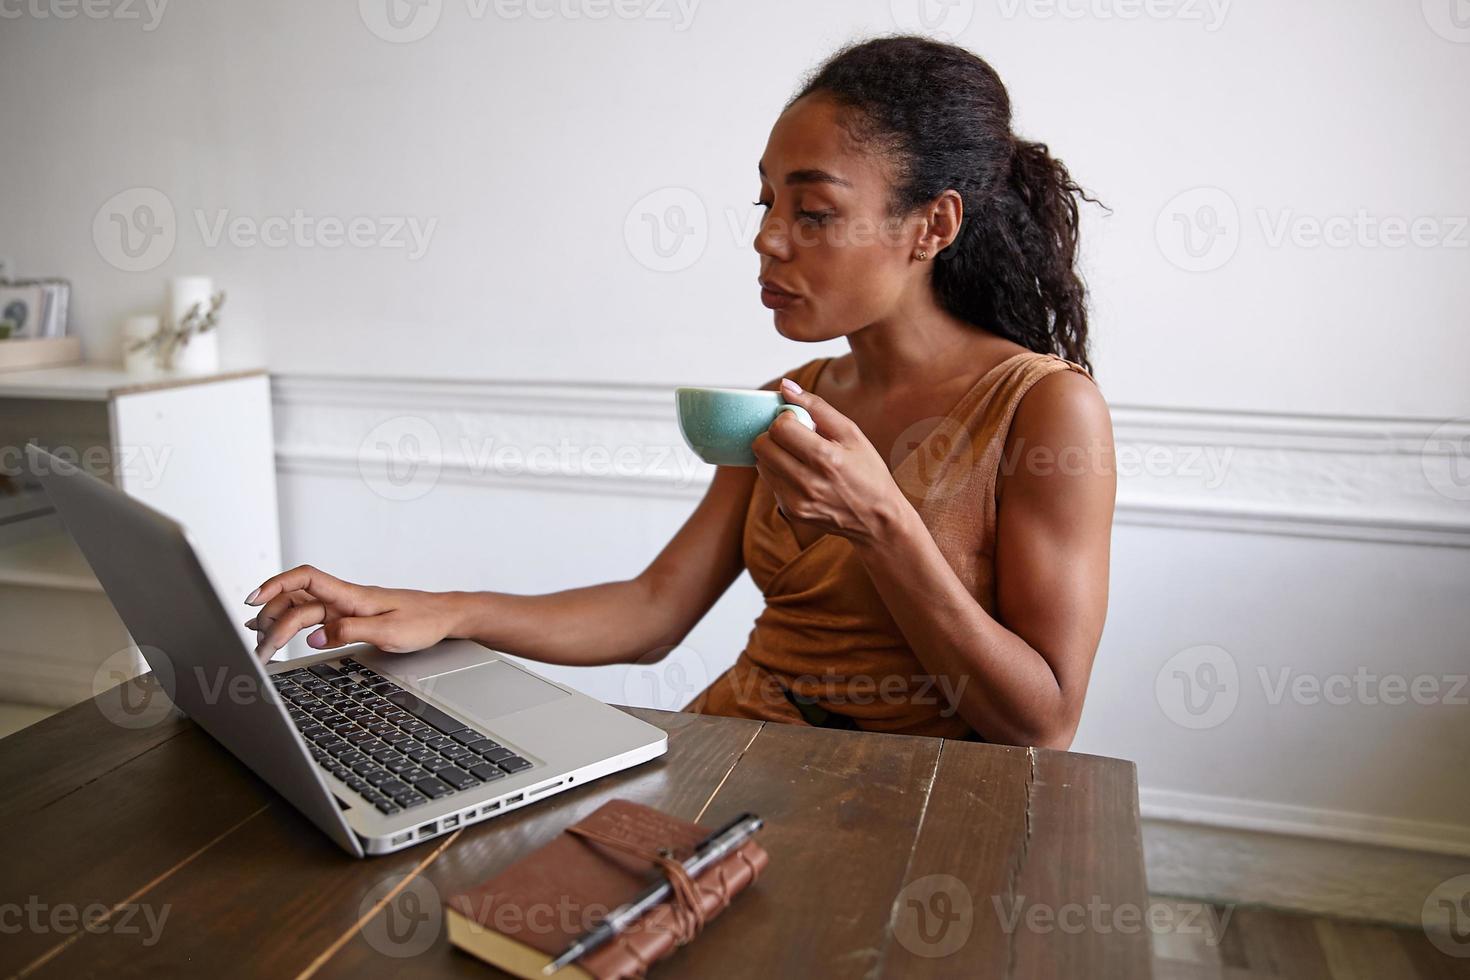 binnenopname van een mooie, gekrulde vrouw met een donkere huid die zich voordeed op de werkruimte met een serieus gezicht, koffie drinkend terwijl ze aantekeningen typte op haar laptop foto